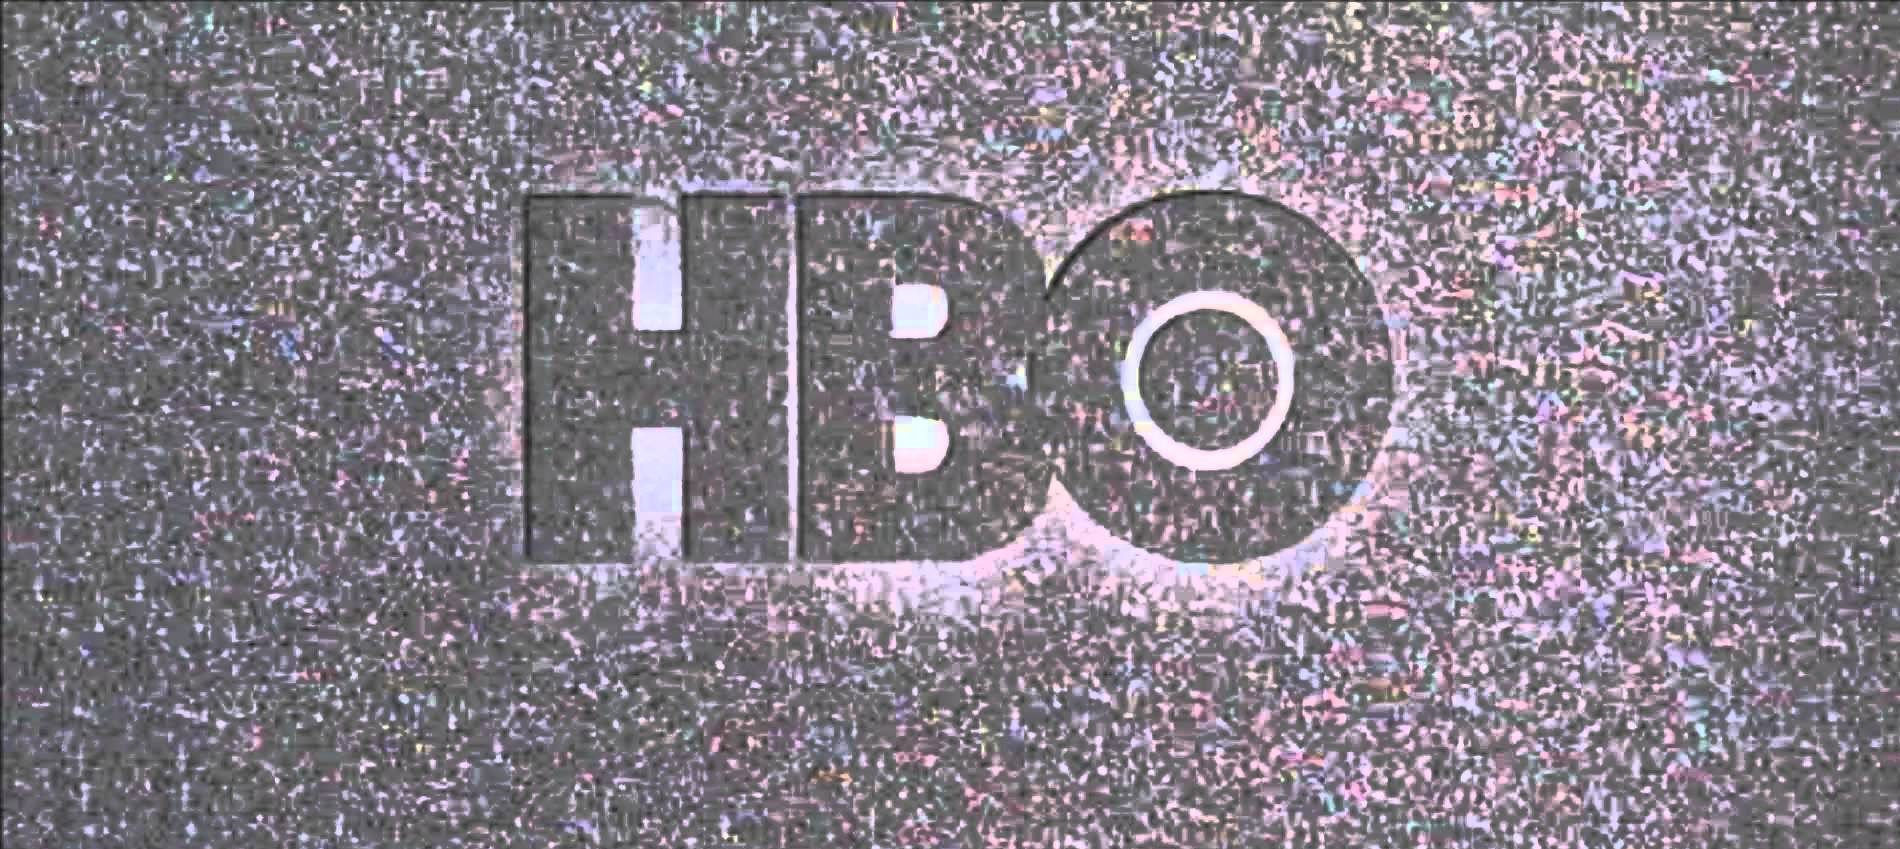  HBO’yu Karıştıran Siber Saldırıyla İlgili Şu Ana Dek Bildiklerimiz